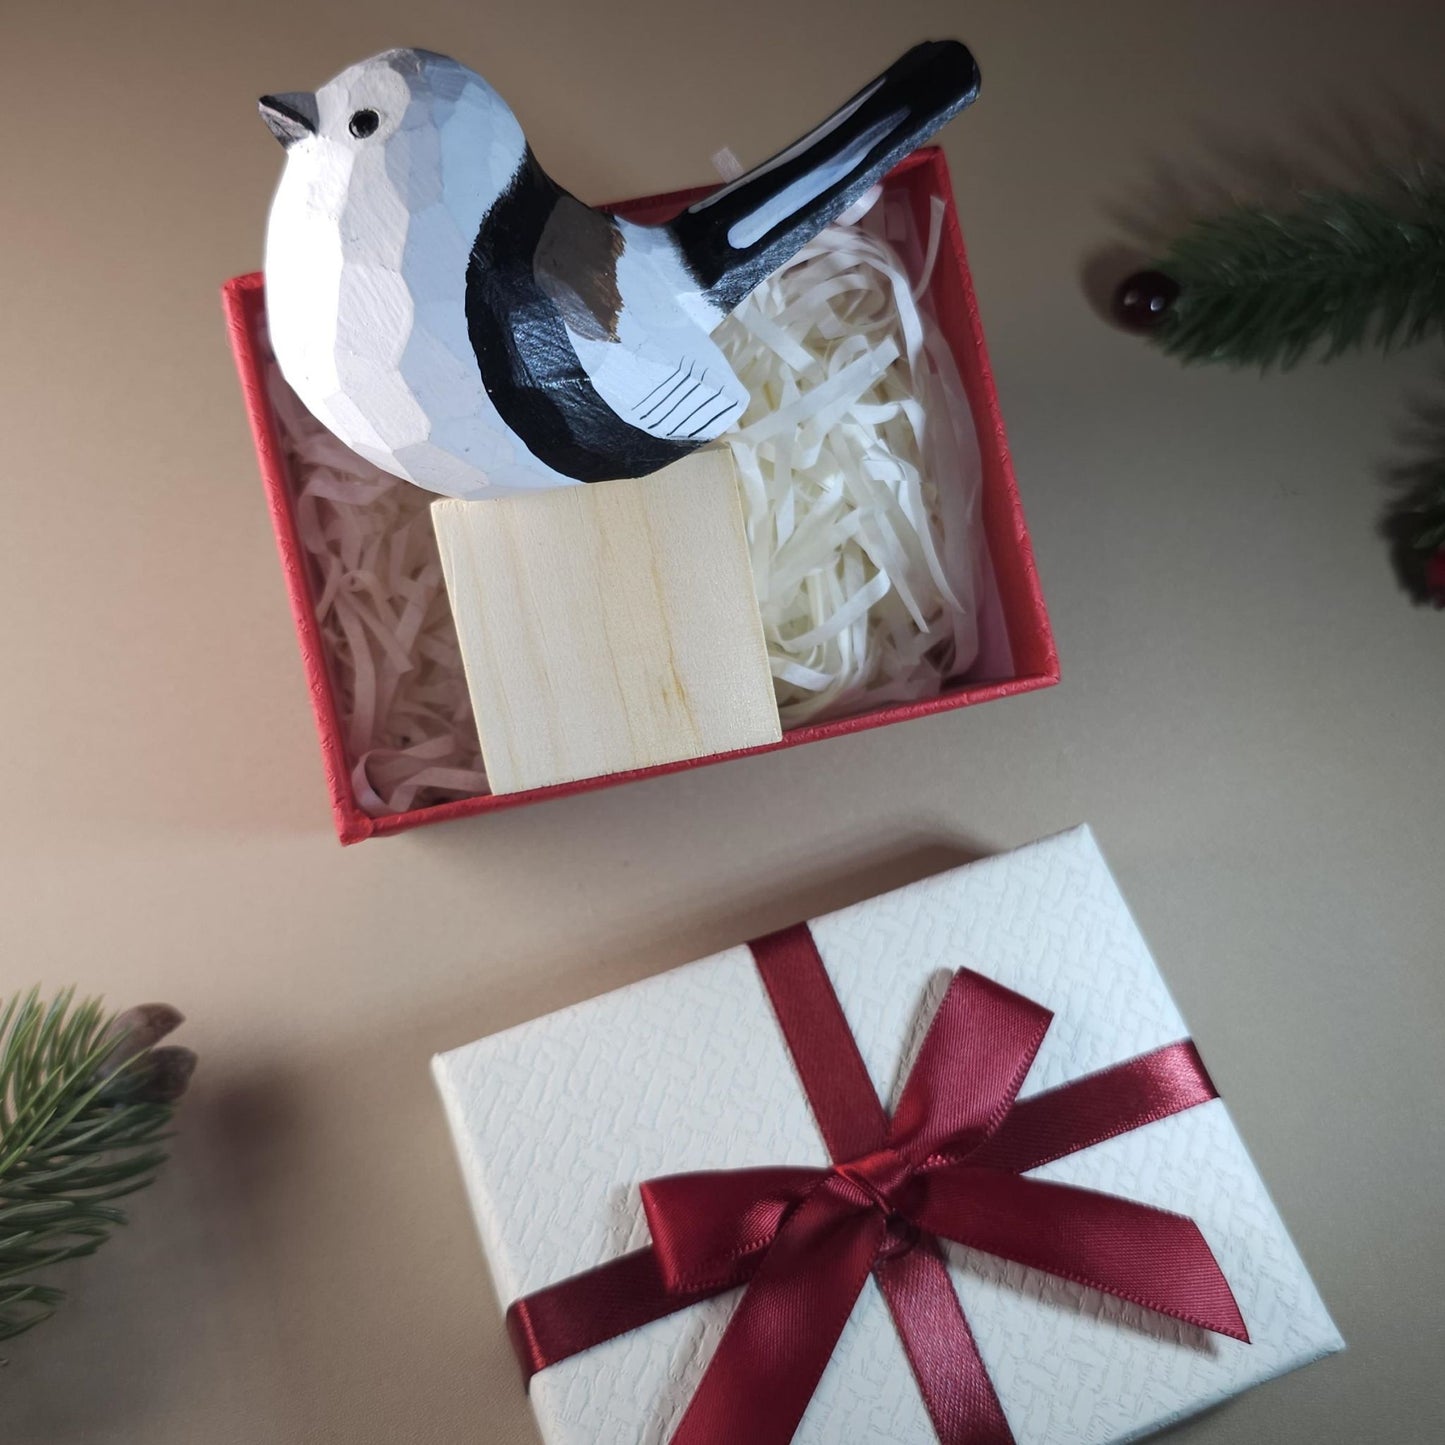 La figura de pájaro viene con soporte de madera y caja de regalo.